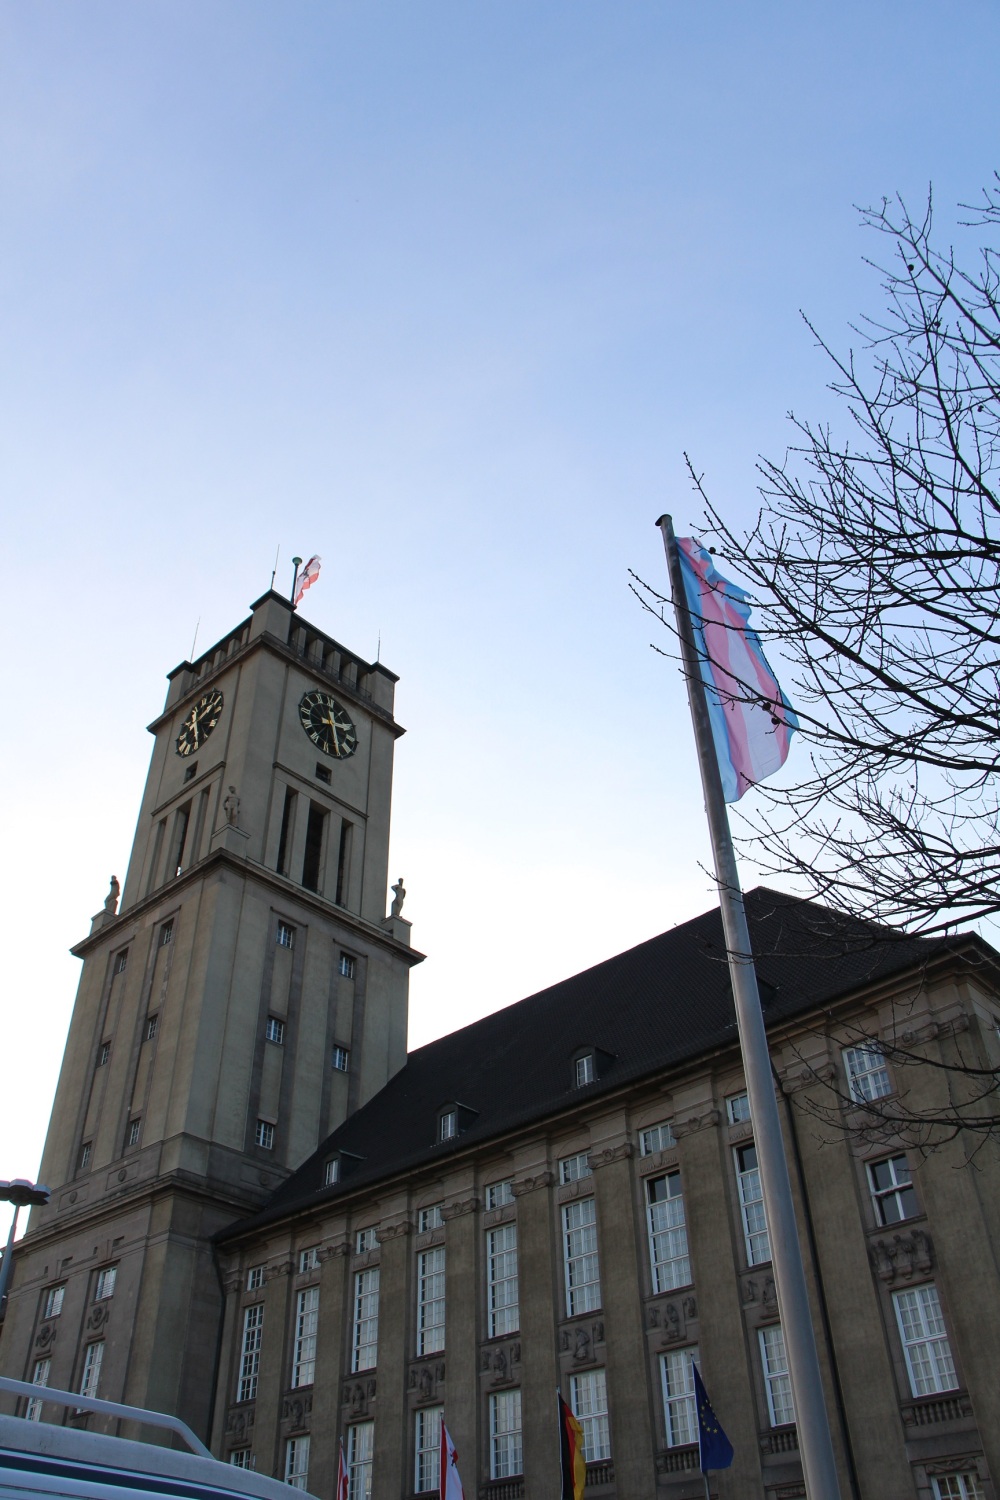 Vor einem großen Gebäude mit Uhrenturm weht eine blau-rosa-weiß-gestreifte Flagge an einem Mast.